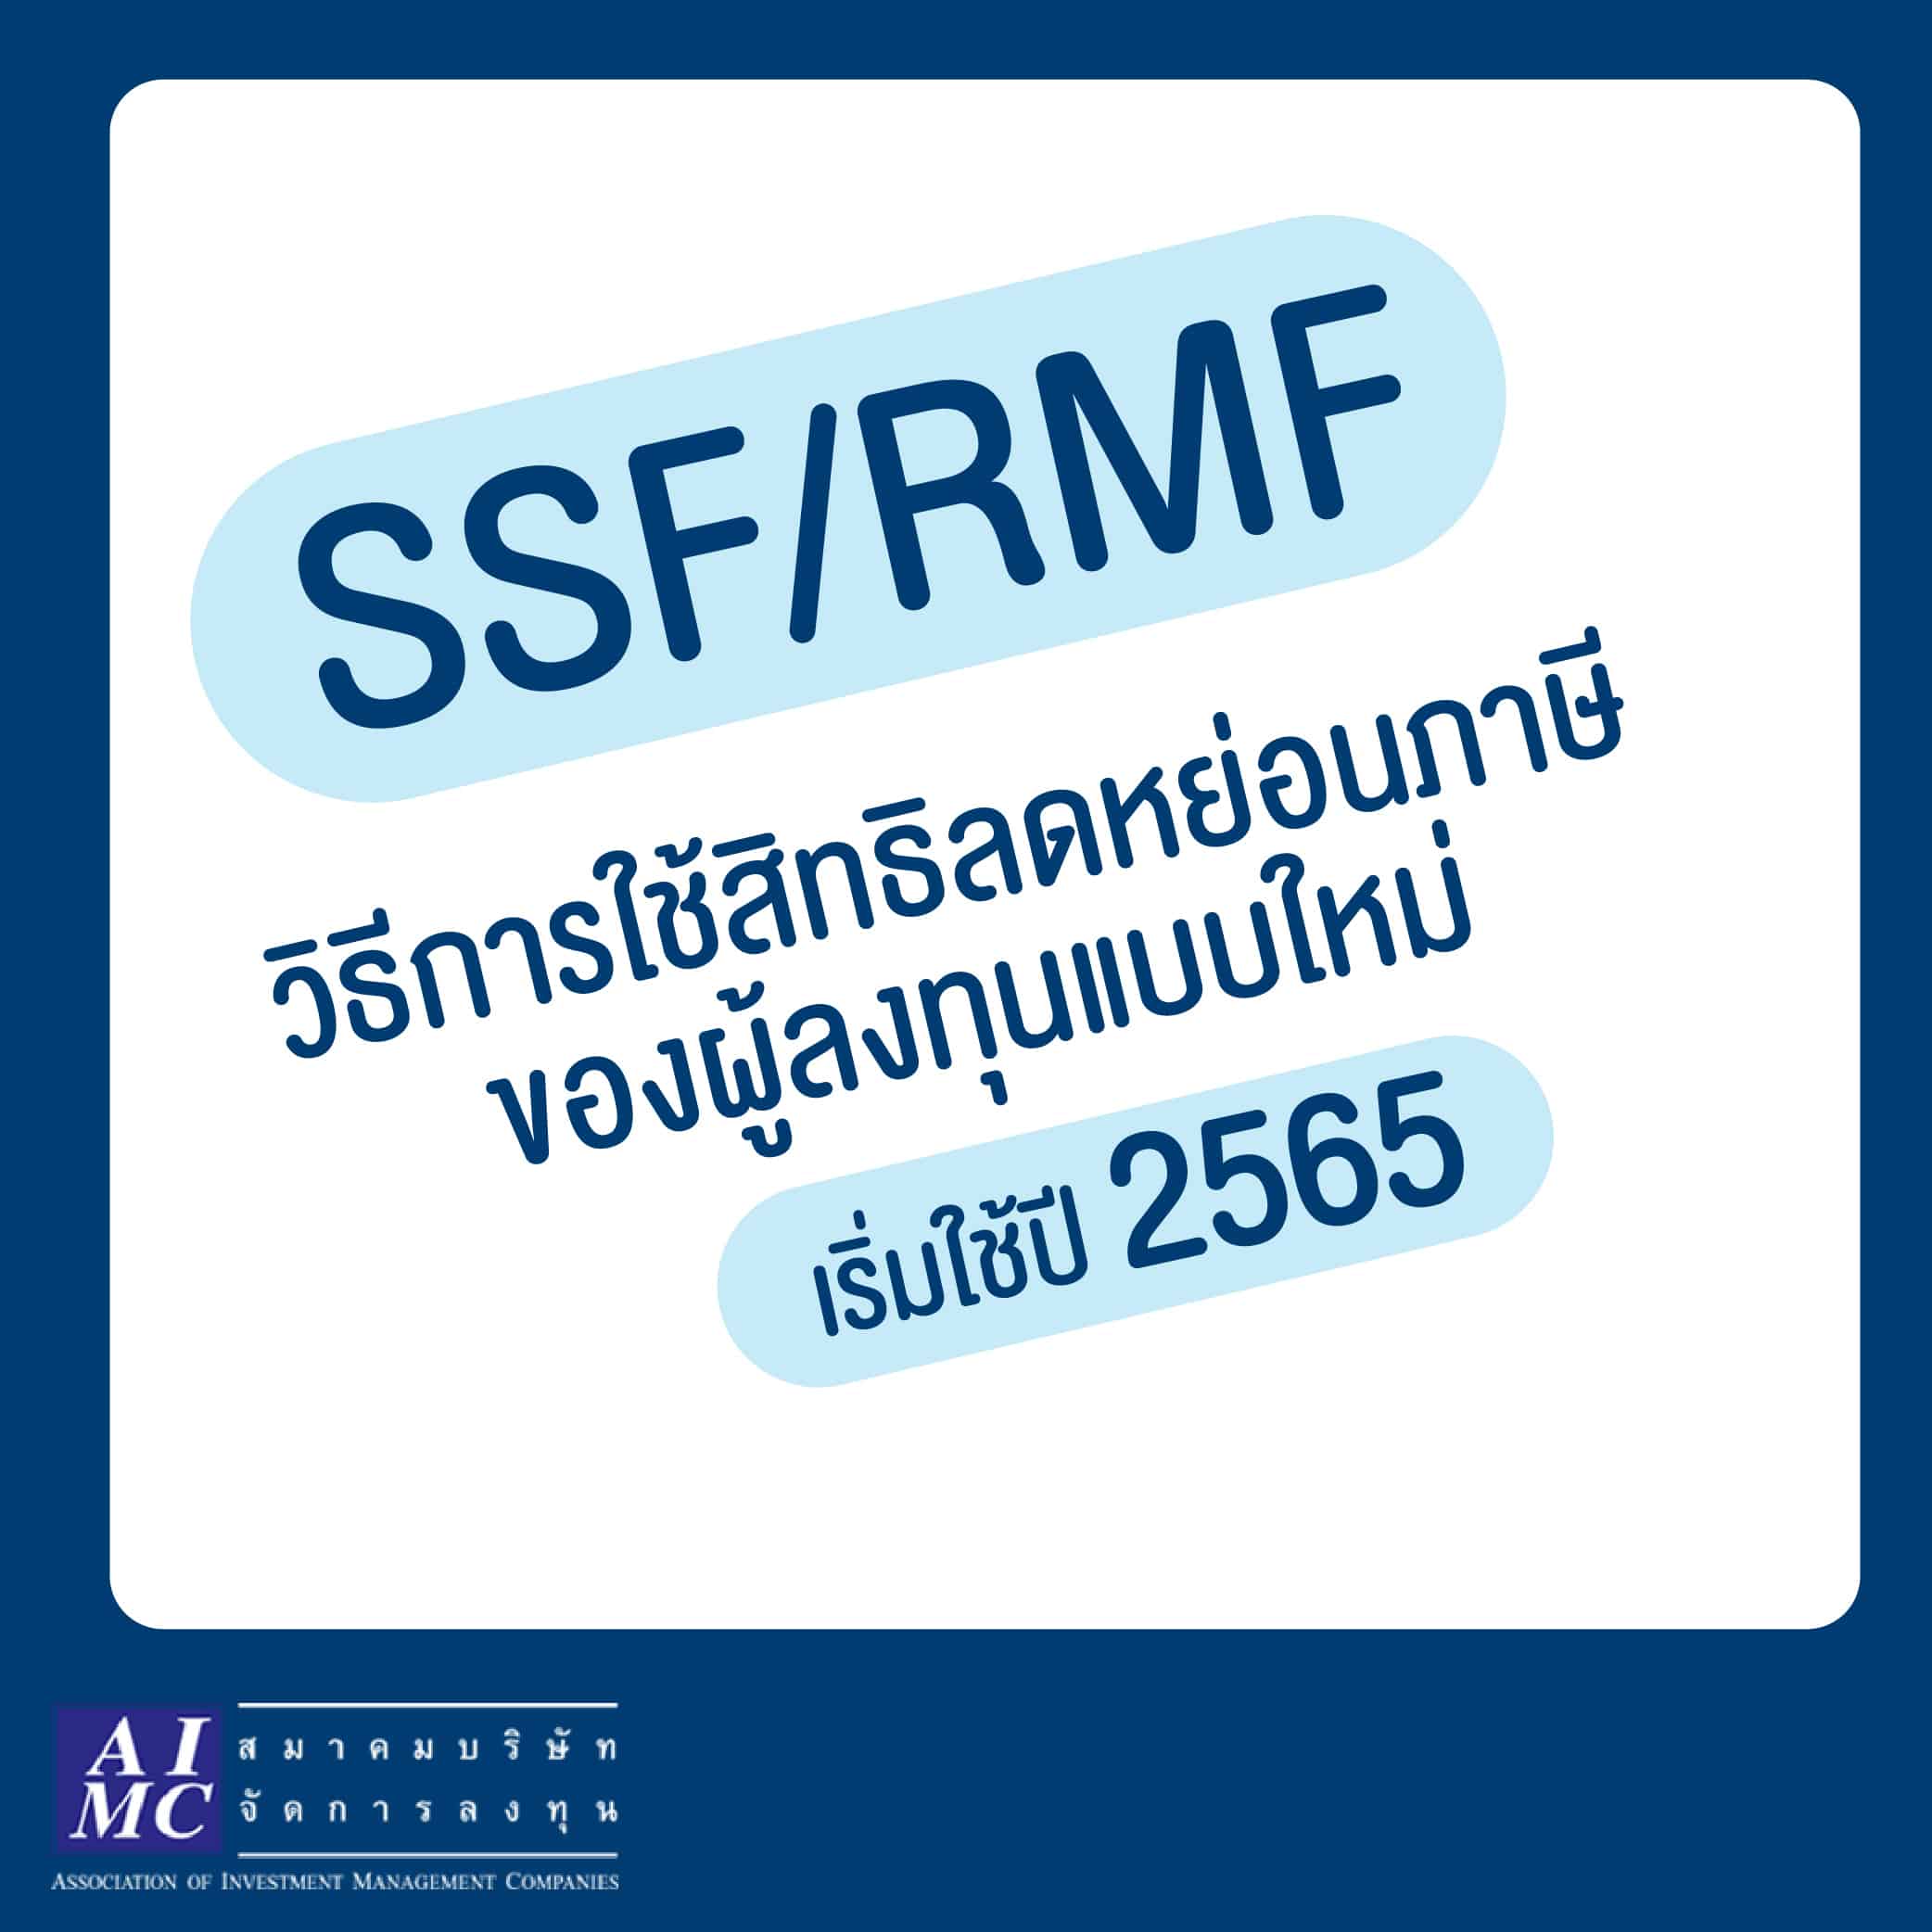 สมาคมบริษัทจัดการลงทุนแนะผู้ลงทุนใน SSF/RMF เตรียมพร้อม!! แจ้งความประสงค์ลดหย่อนภาษีตามเกณฑ์ใหม่กรมสรรพากร